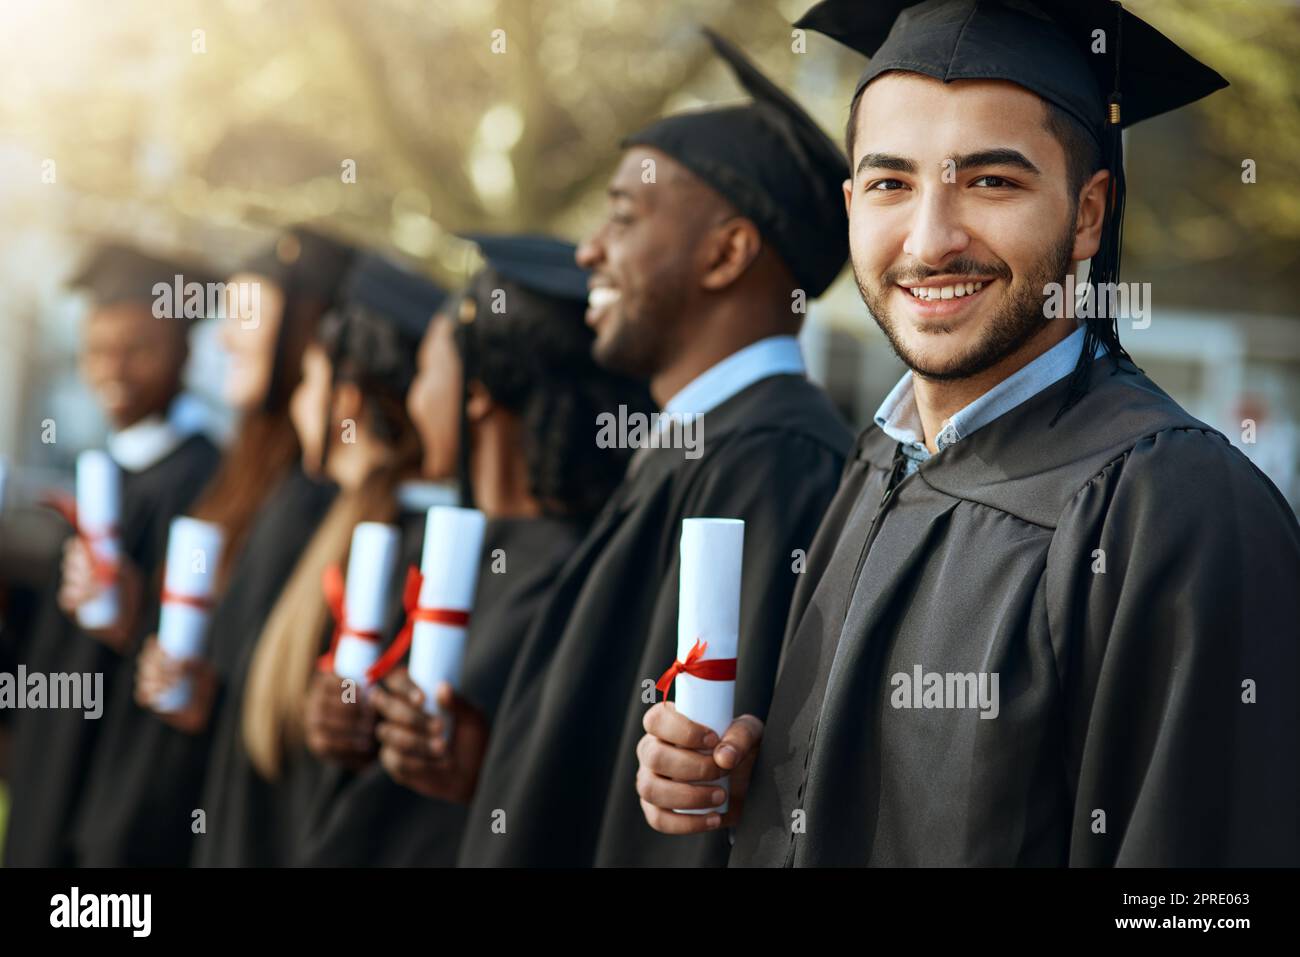 Stolz beginnt nicht, das Gefühl zu beschreiben. Porträt eines jungen Mannes, der sein Diplom hält, während er mit seinen Mitstudenten am Abschlusstag steht. Stockfoto